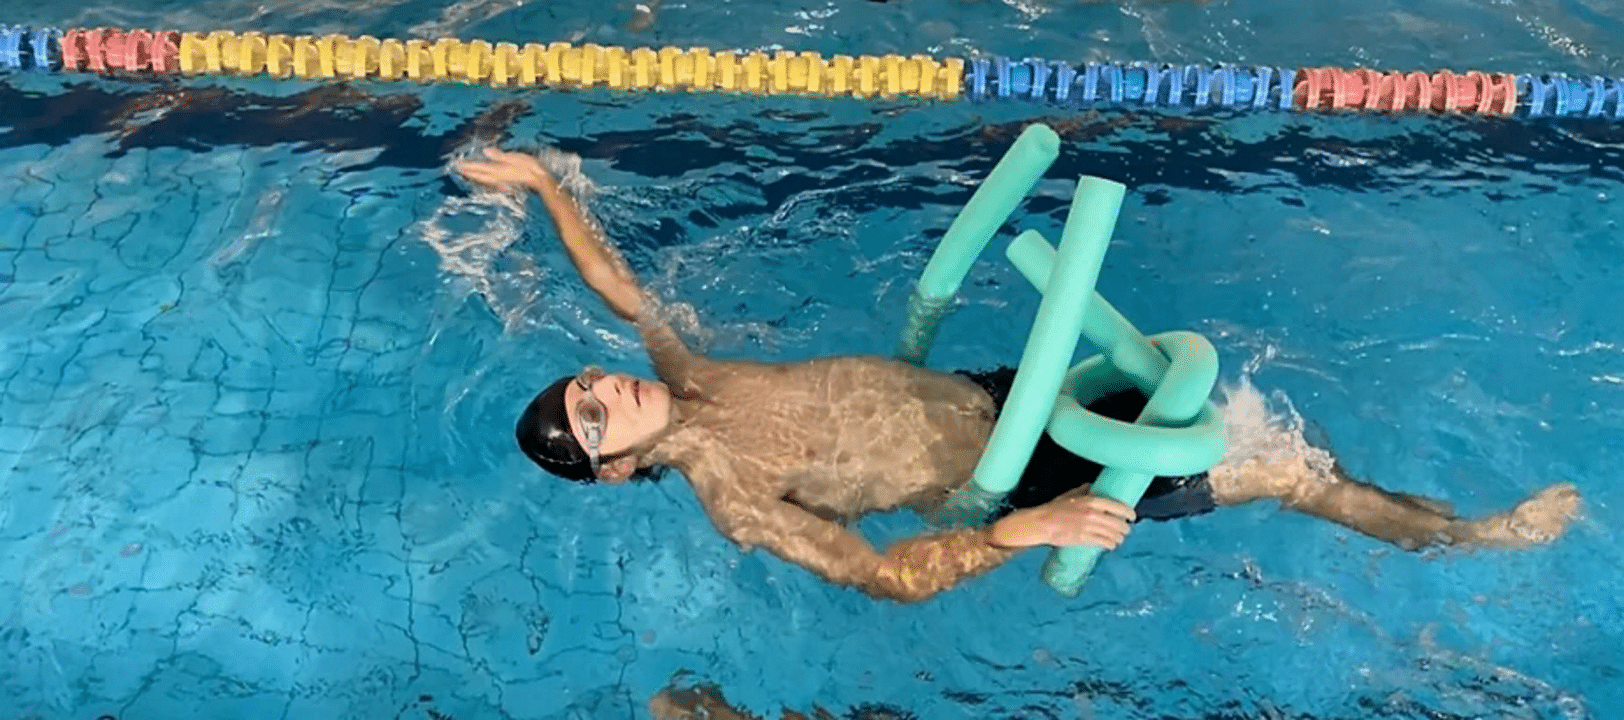 Miembro del club nadando